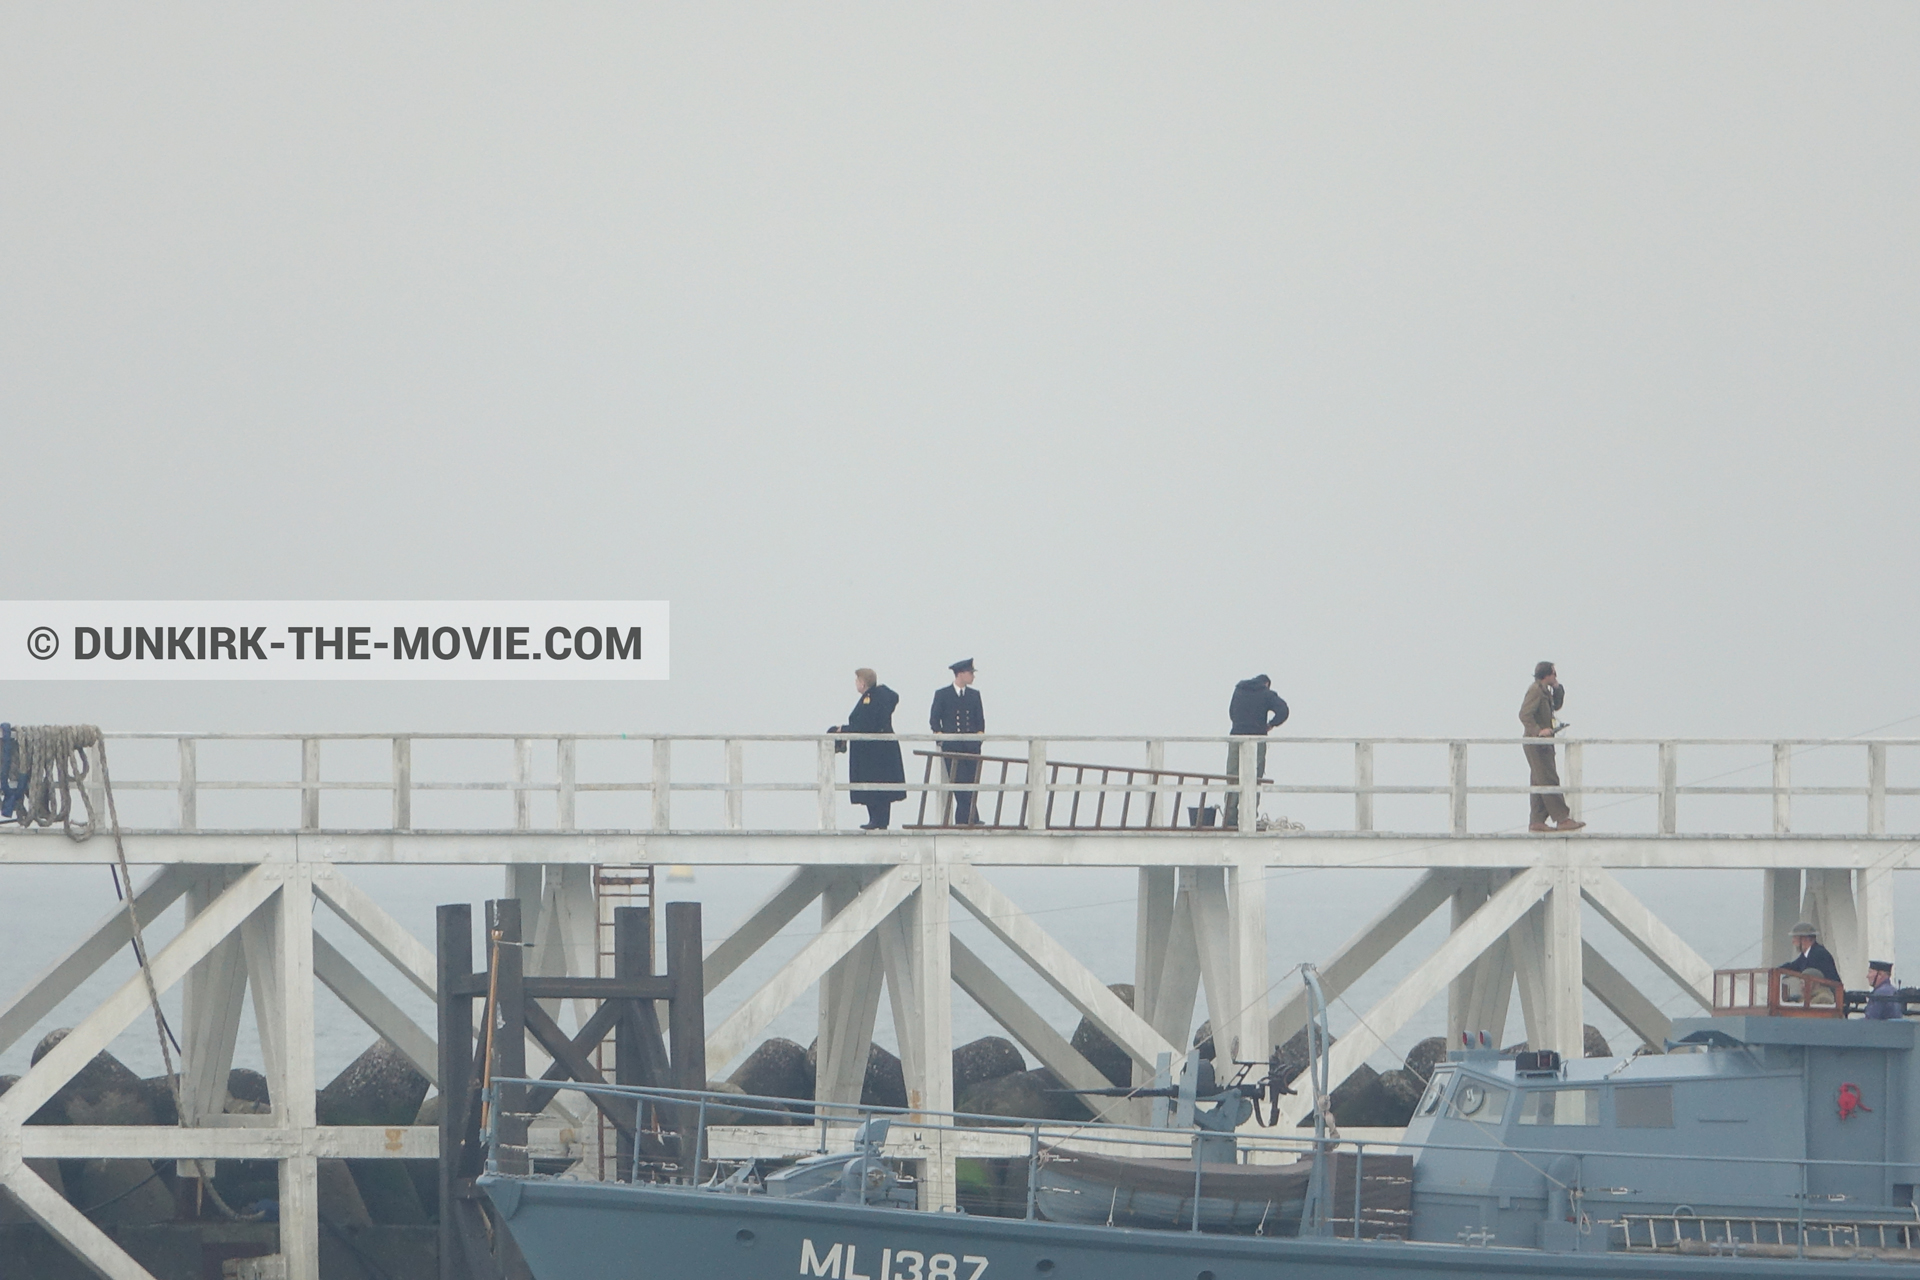 Fotos con actor, cielo gris, muelle del ESTE, Kenneth Branagh, equipo técnica,  durante el rodaje de la película Dunkerque de Nolan